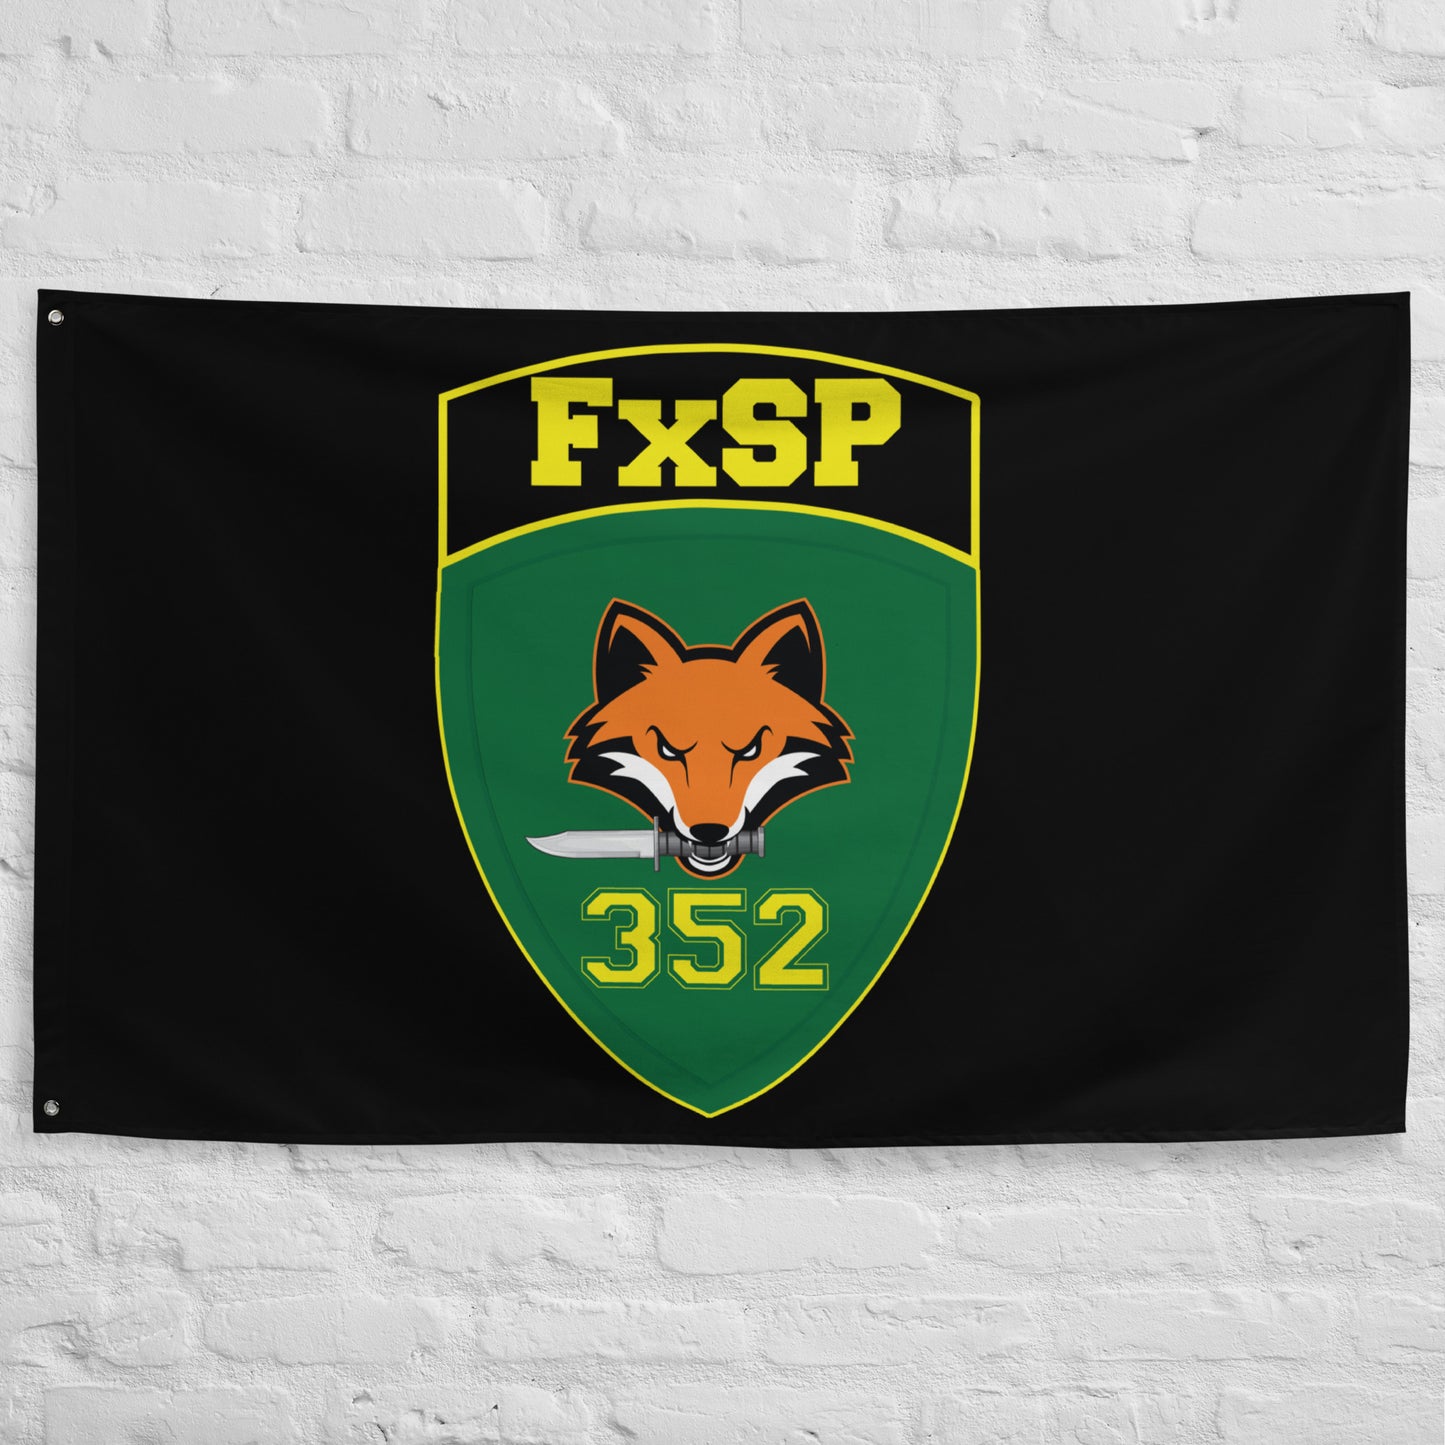 Custom 352 CACOM FXSP Flag